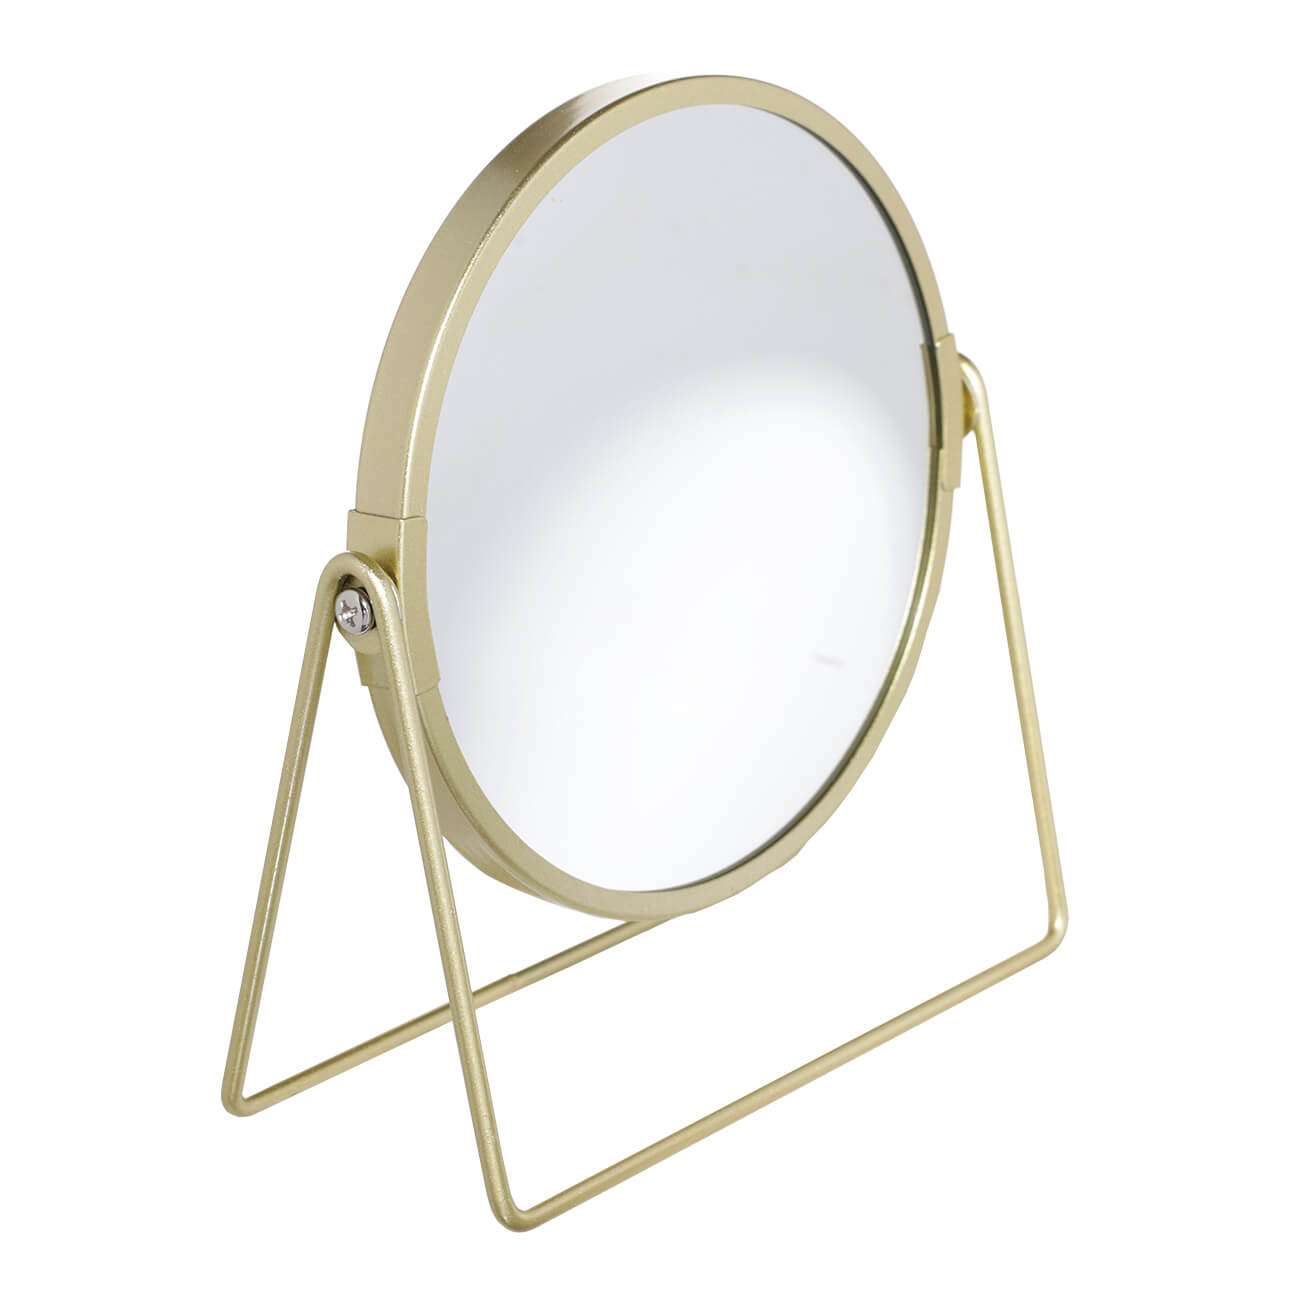 Зеркало настольное, 18 см, двустороннее, металл, круглое, золотистое, Freya зеркало настольное 17 см двустороннее на ножке металл круглое fantastic